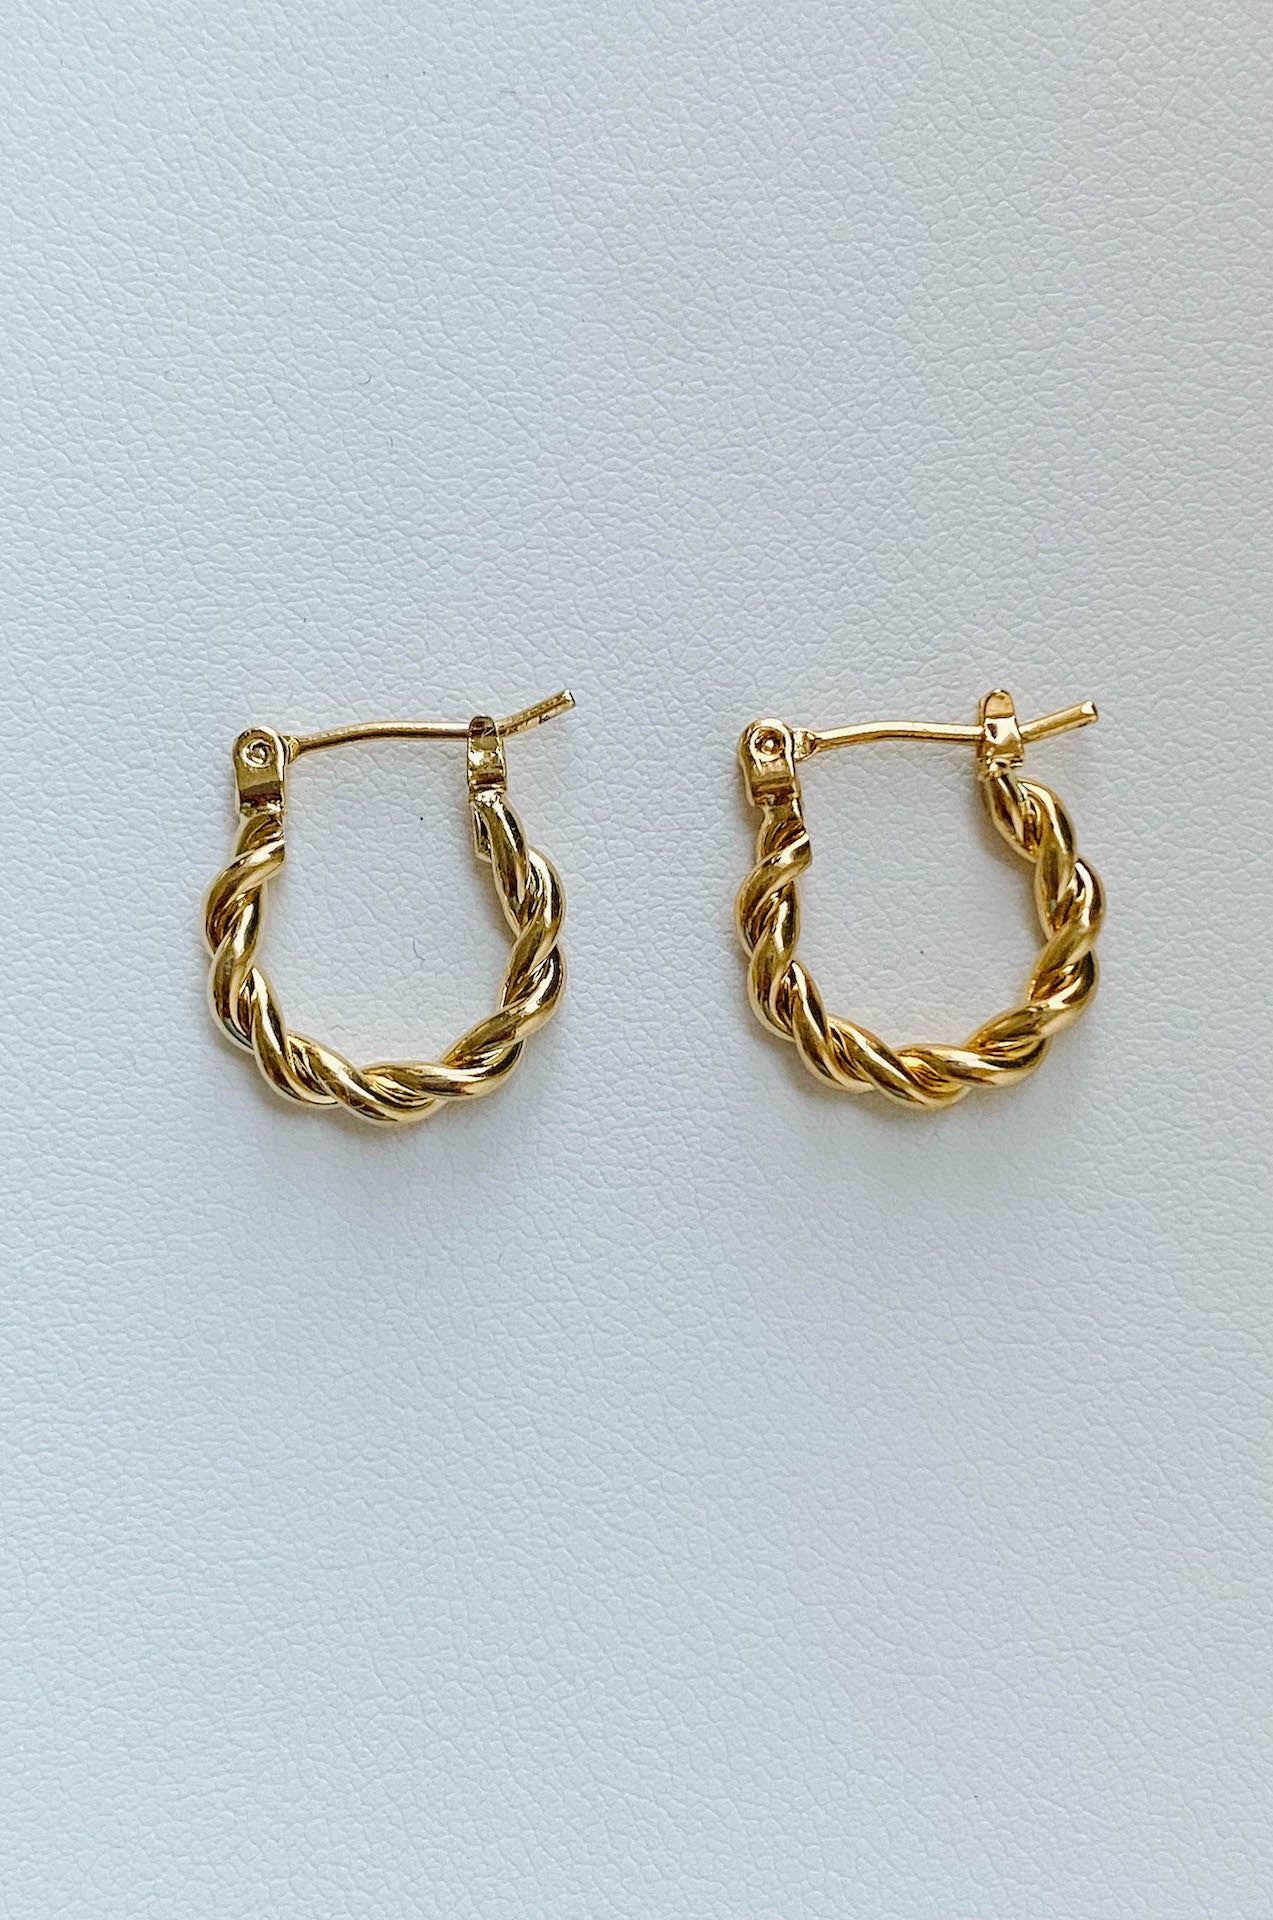 waterproof 14k gold plated twisted hoop earrings